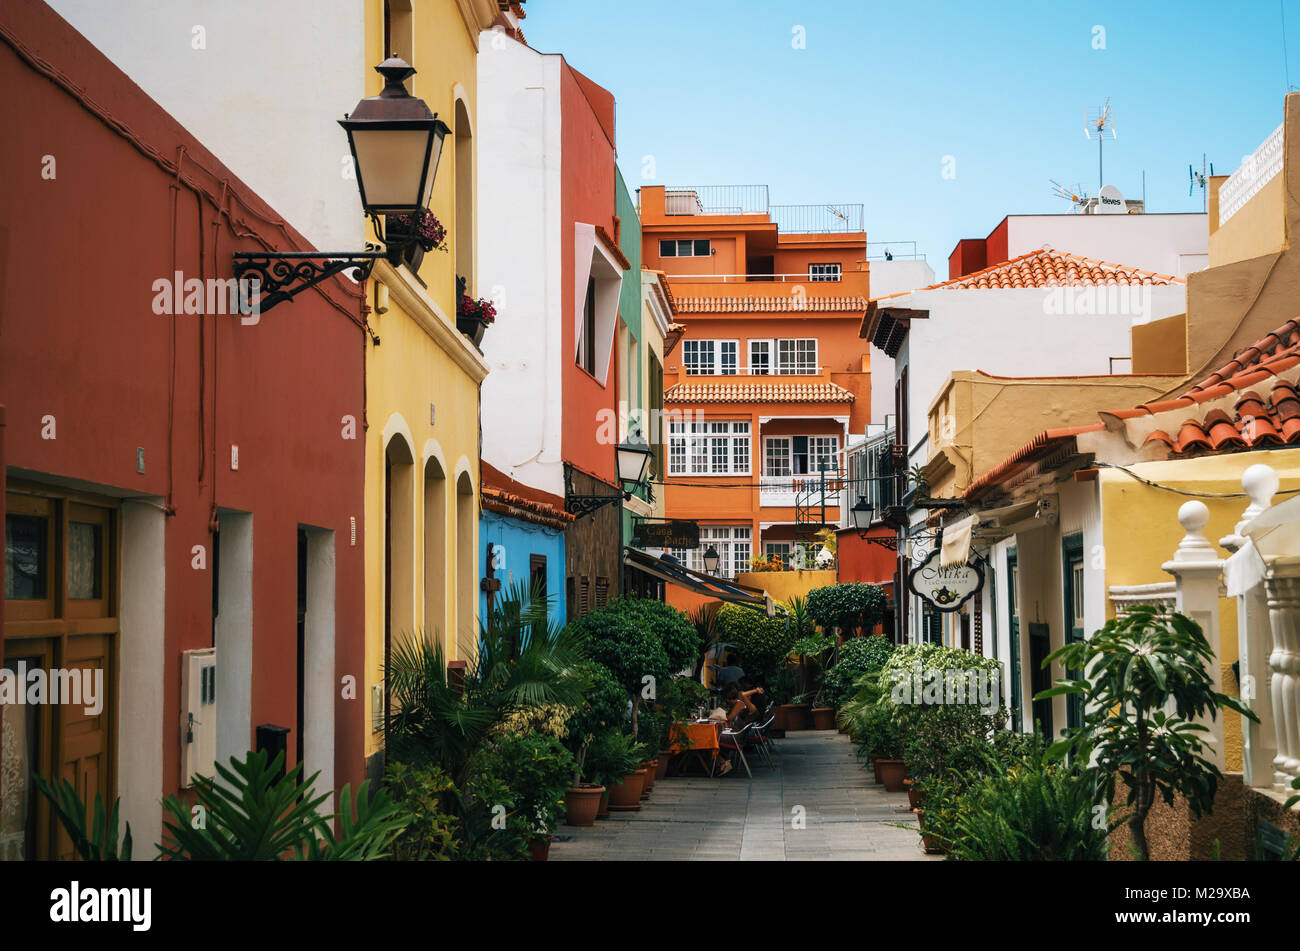 Puerto de la Cruz, Tenerife, Islas Canarias - Mayo 30, 2017: calle angosta en la ciudad con coloridas casas de estilo retro, cafeterías y zonas verdes,de la isla de Tenerife, Cana. Foto de stock